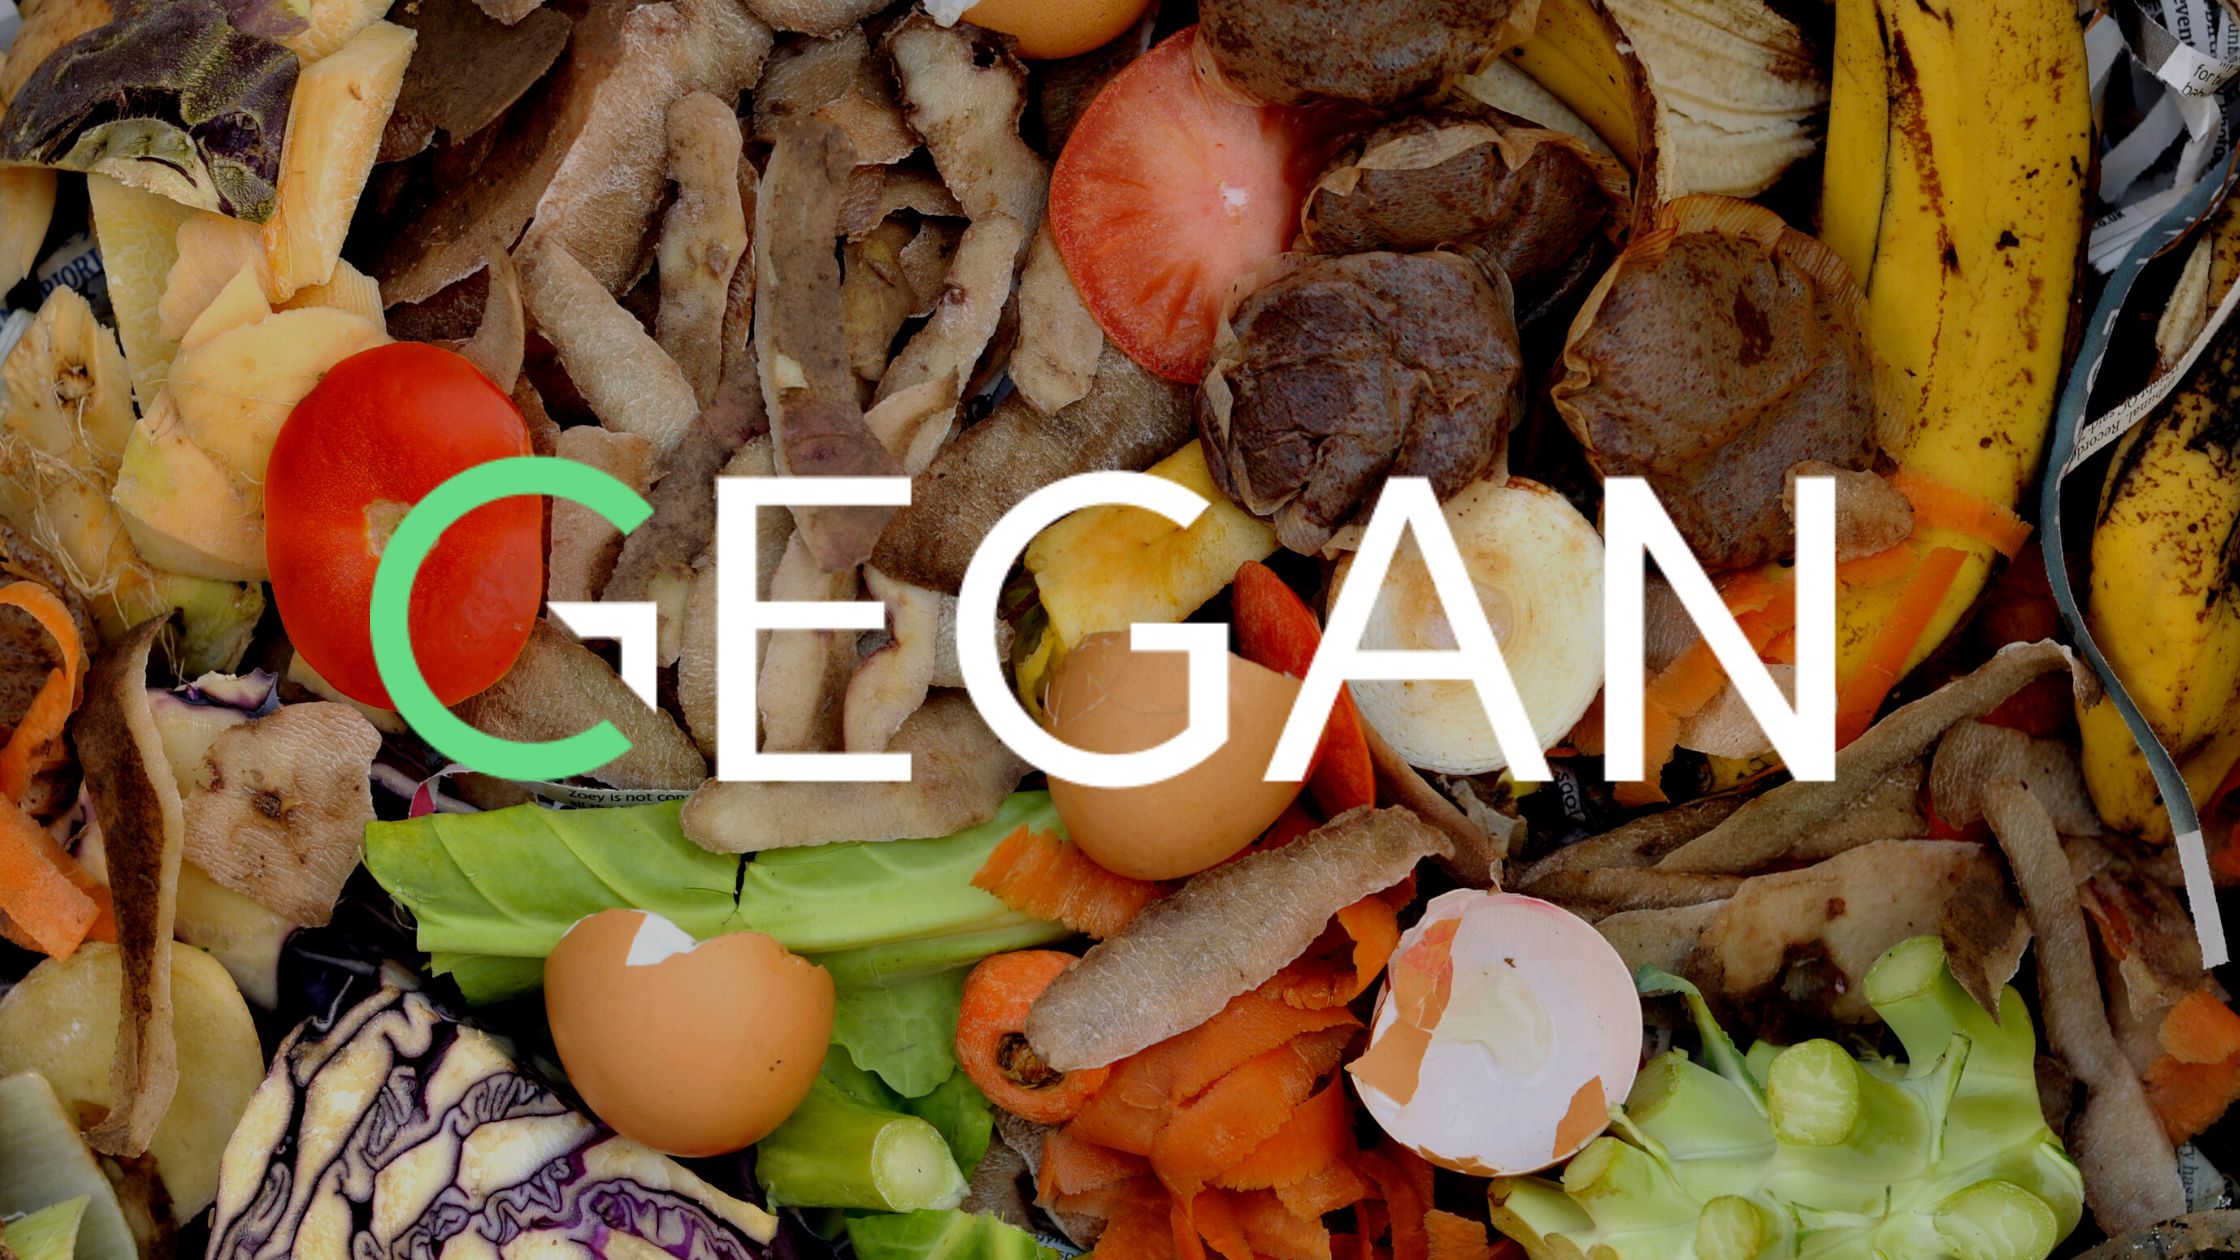 gegan logo on top of food waste